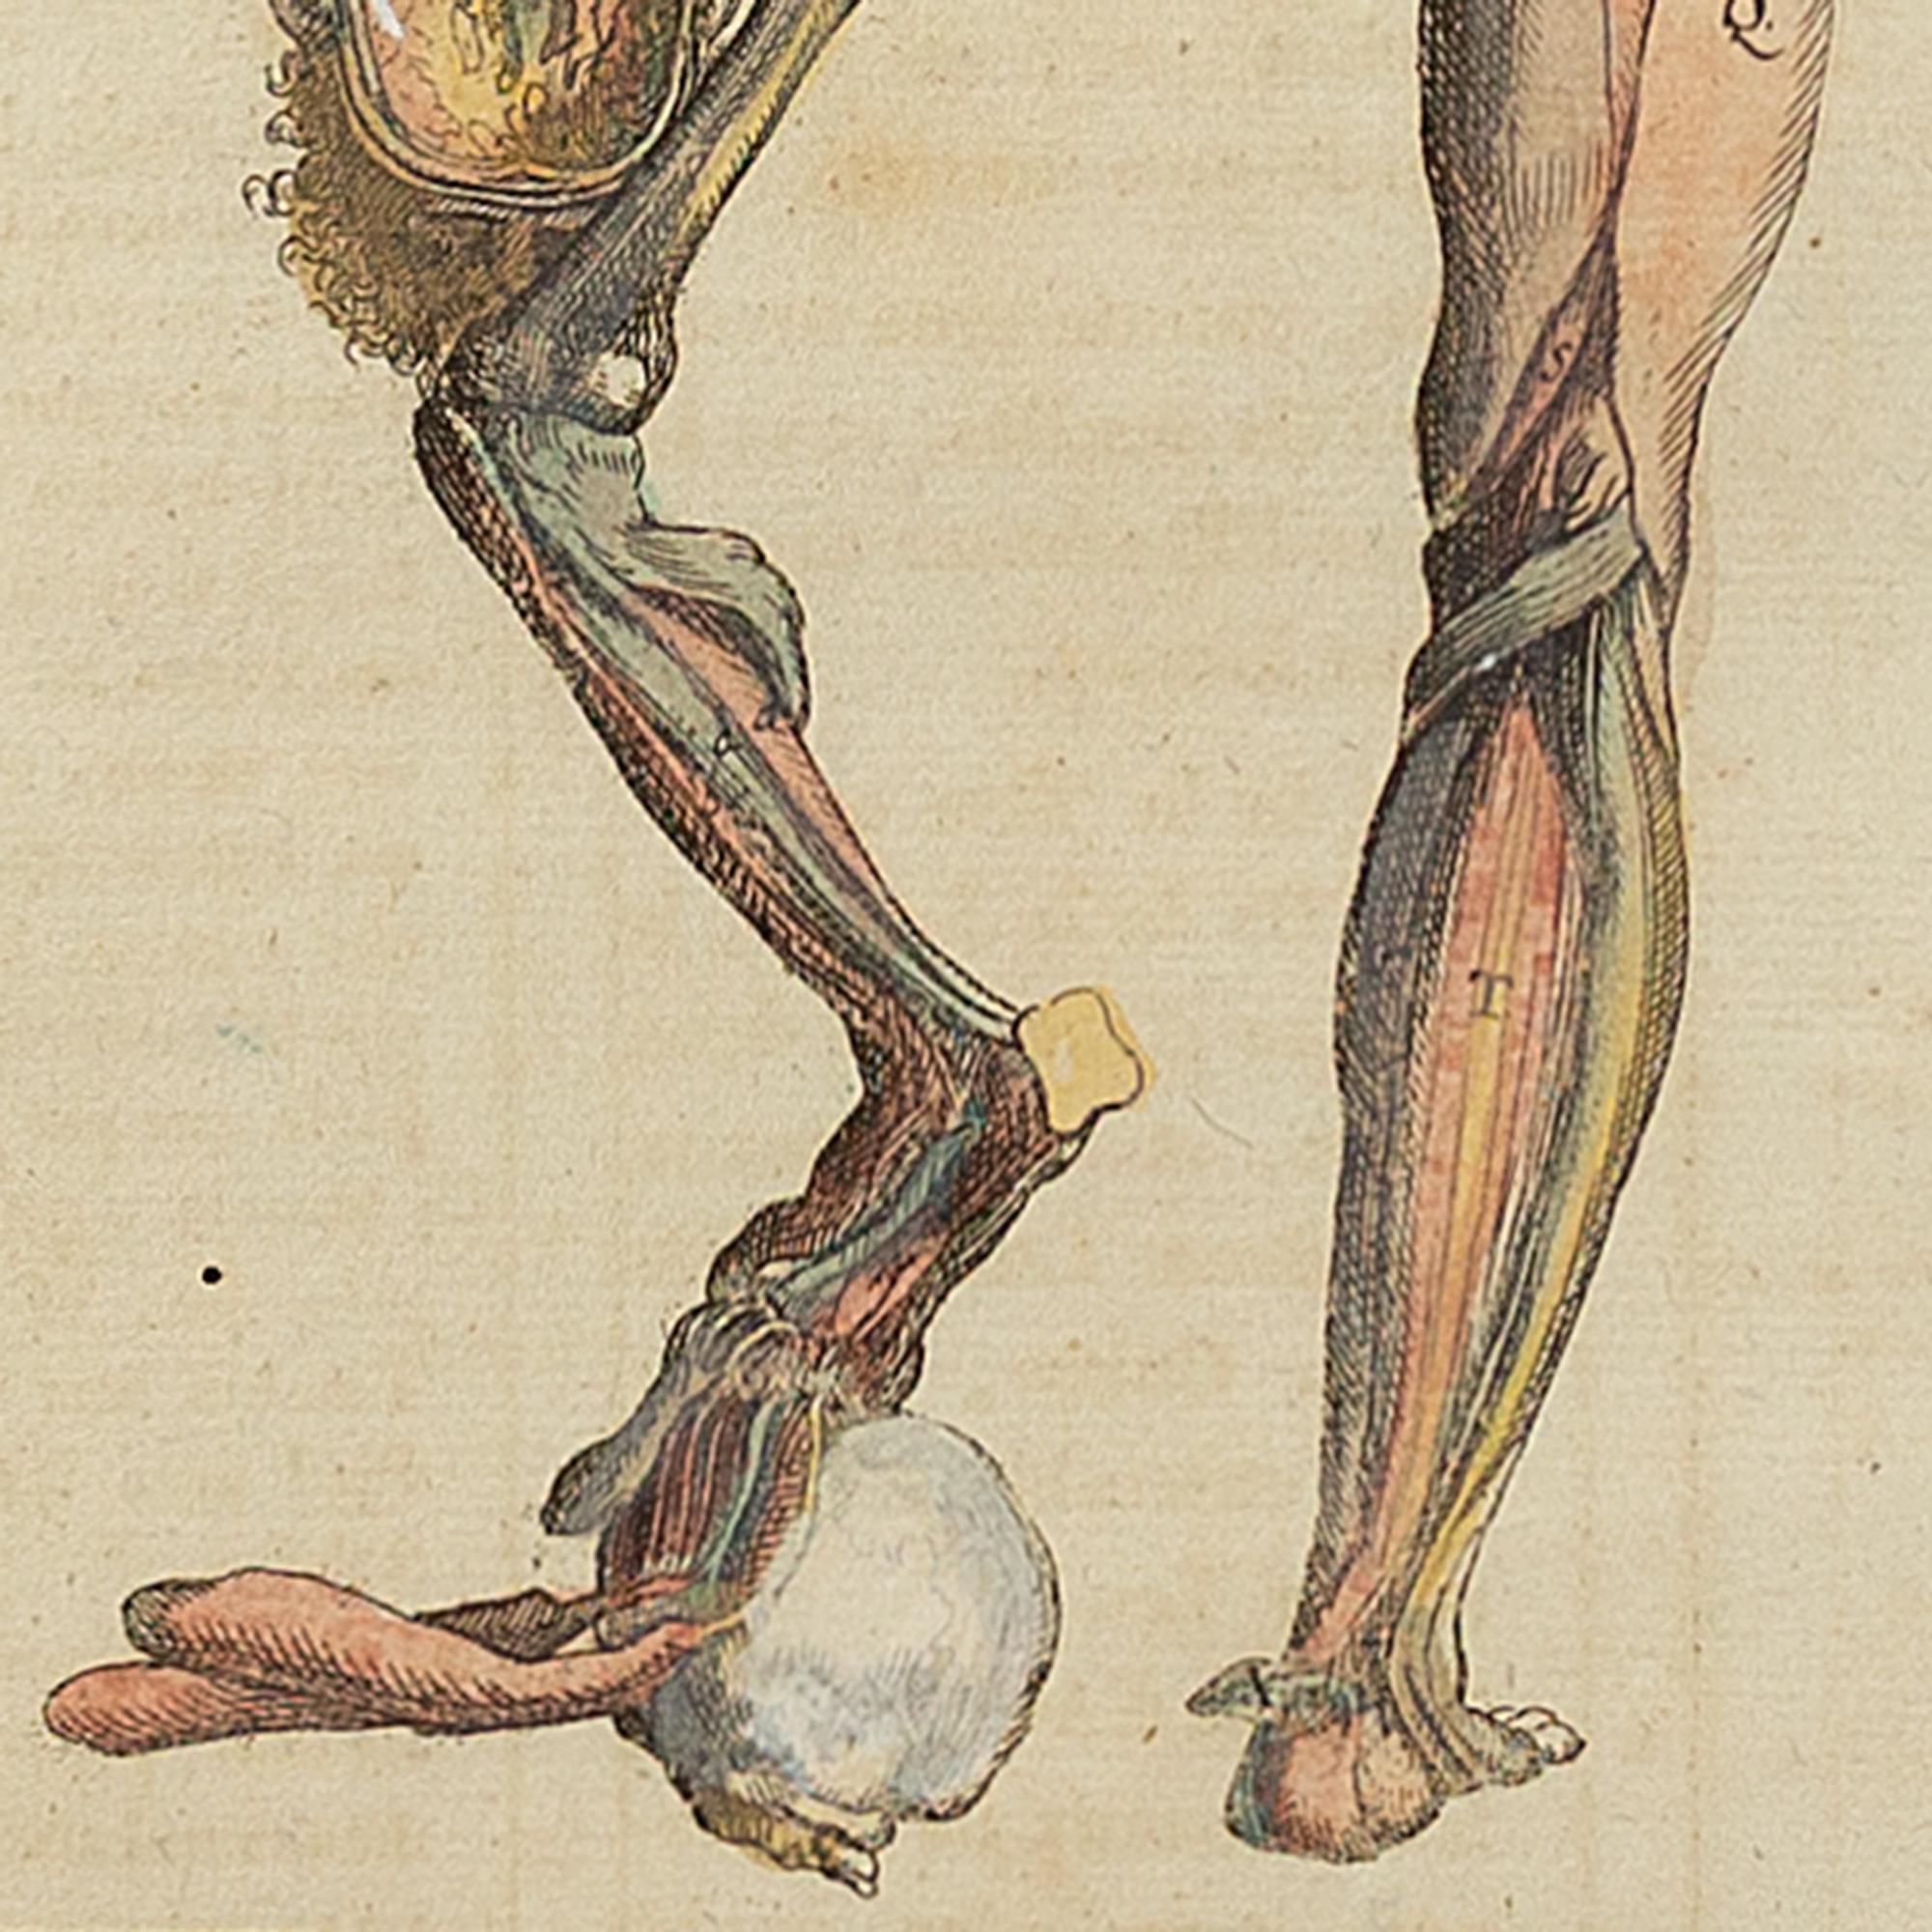 François Tortebat, 18th-Century Anatomical Engraving 5